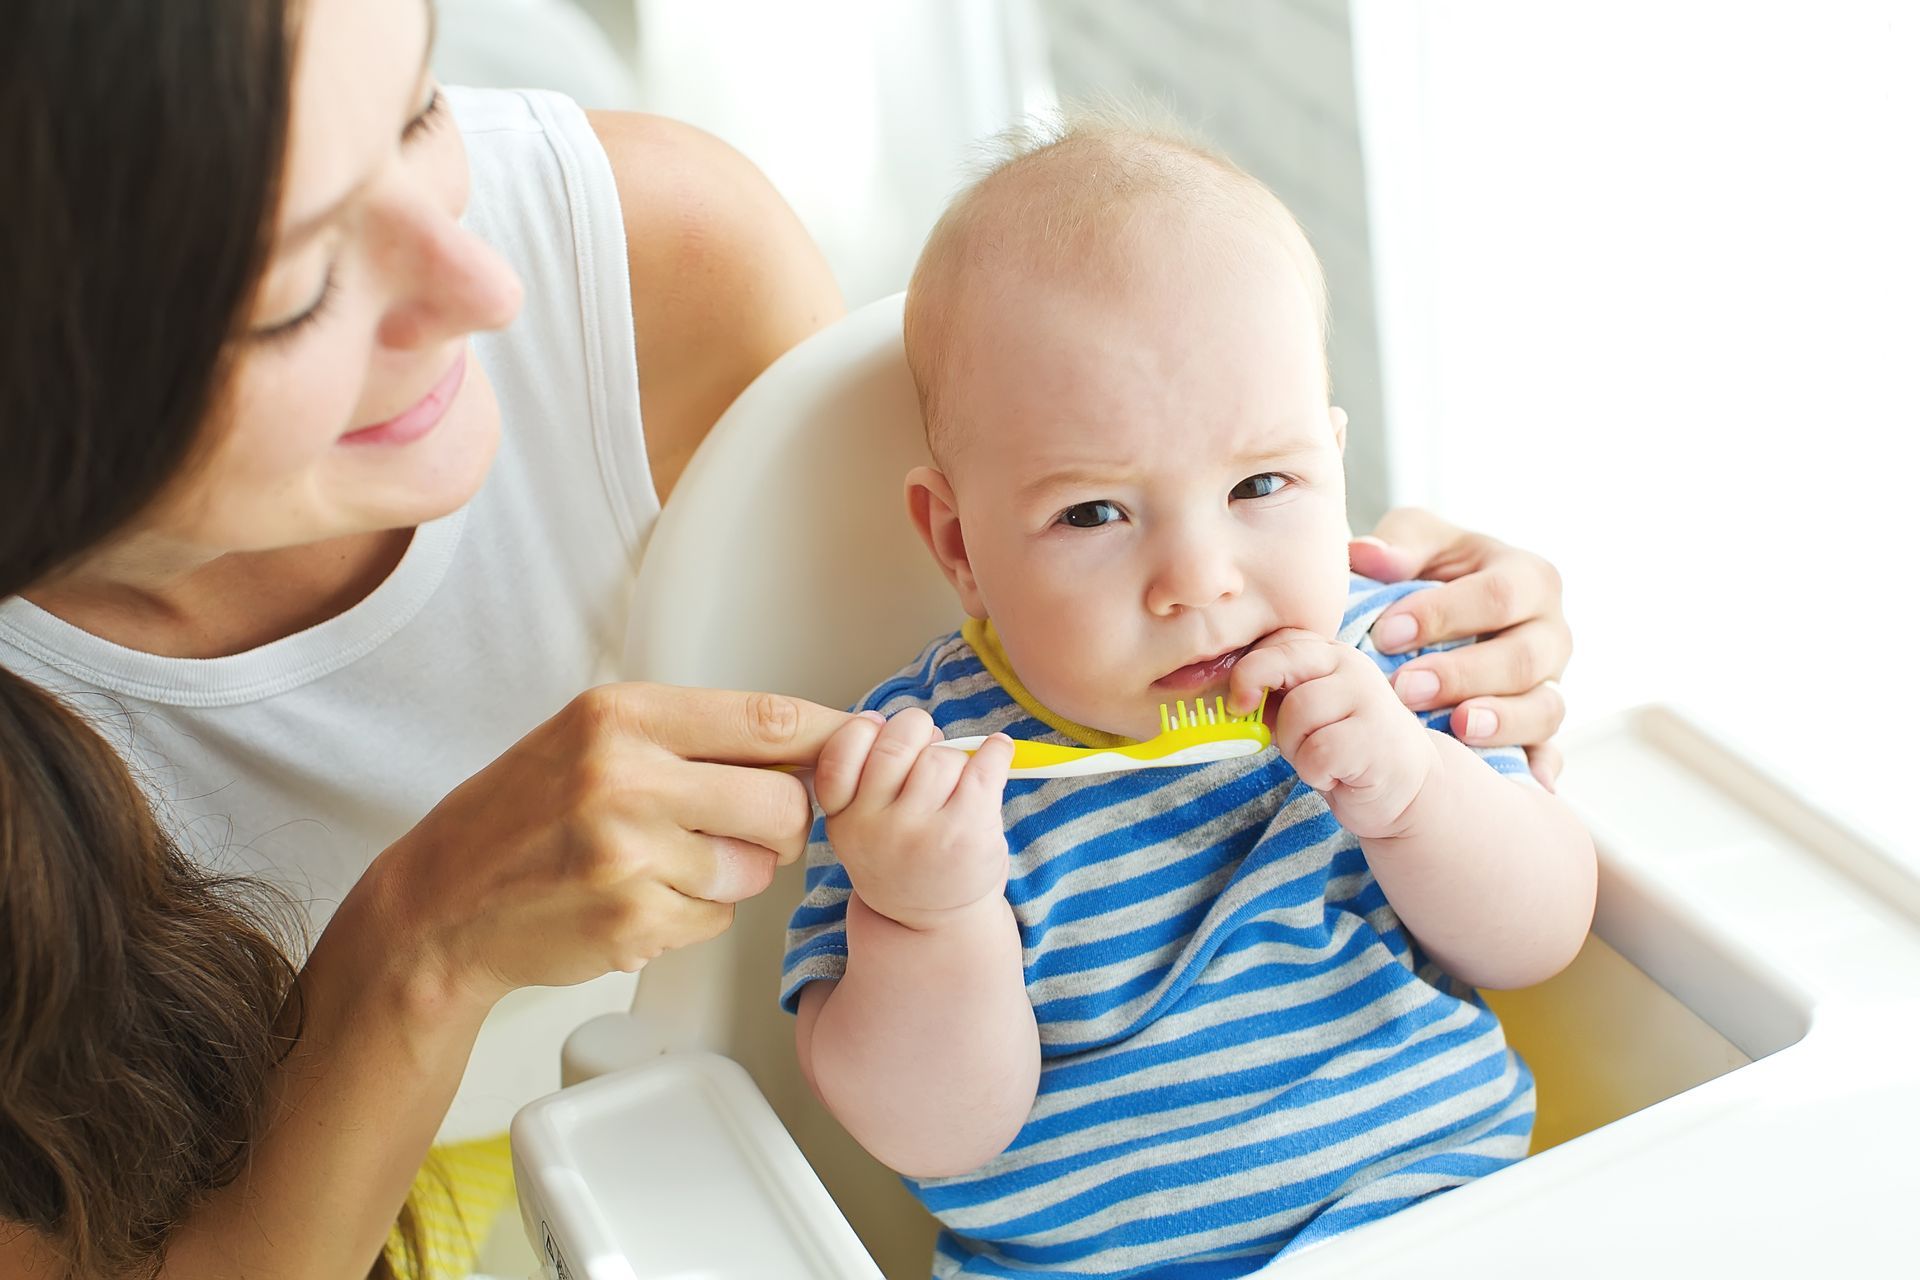 Bambino di un anno che impara a prendere confidenza con lo spazzolino dentale